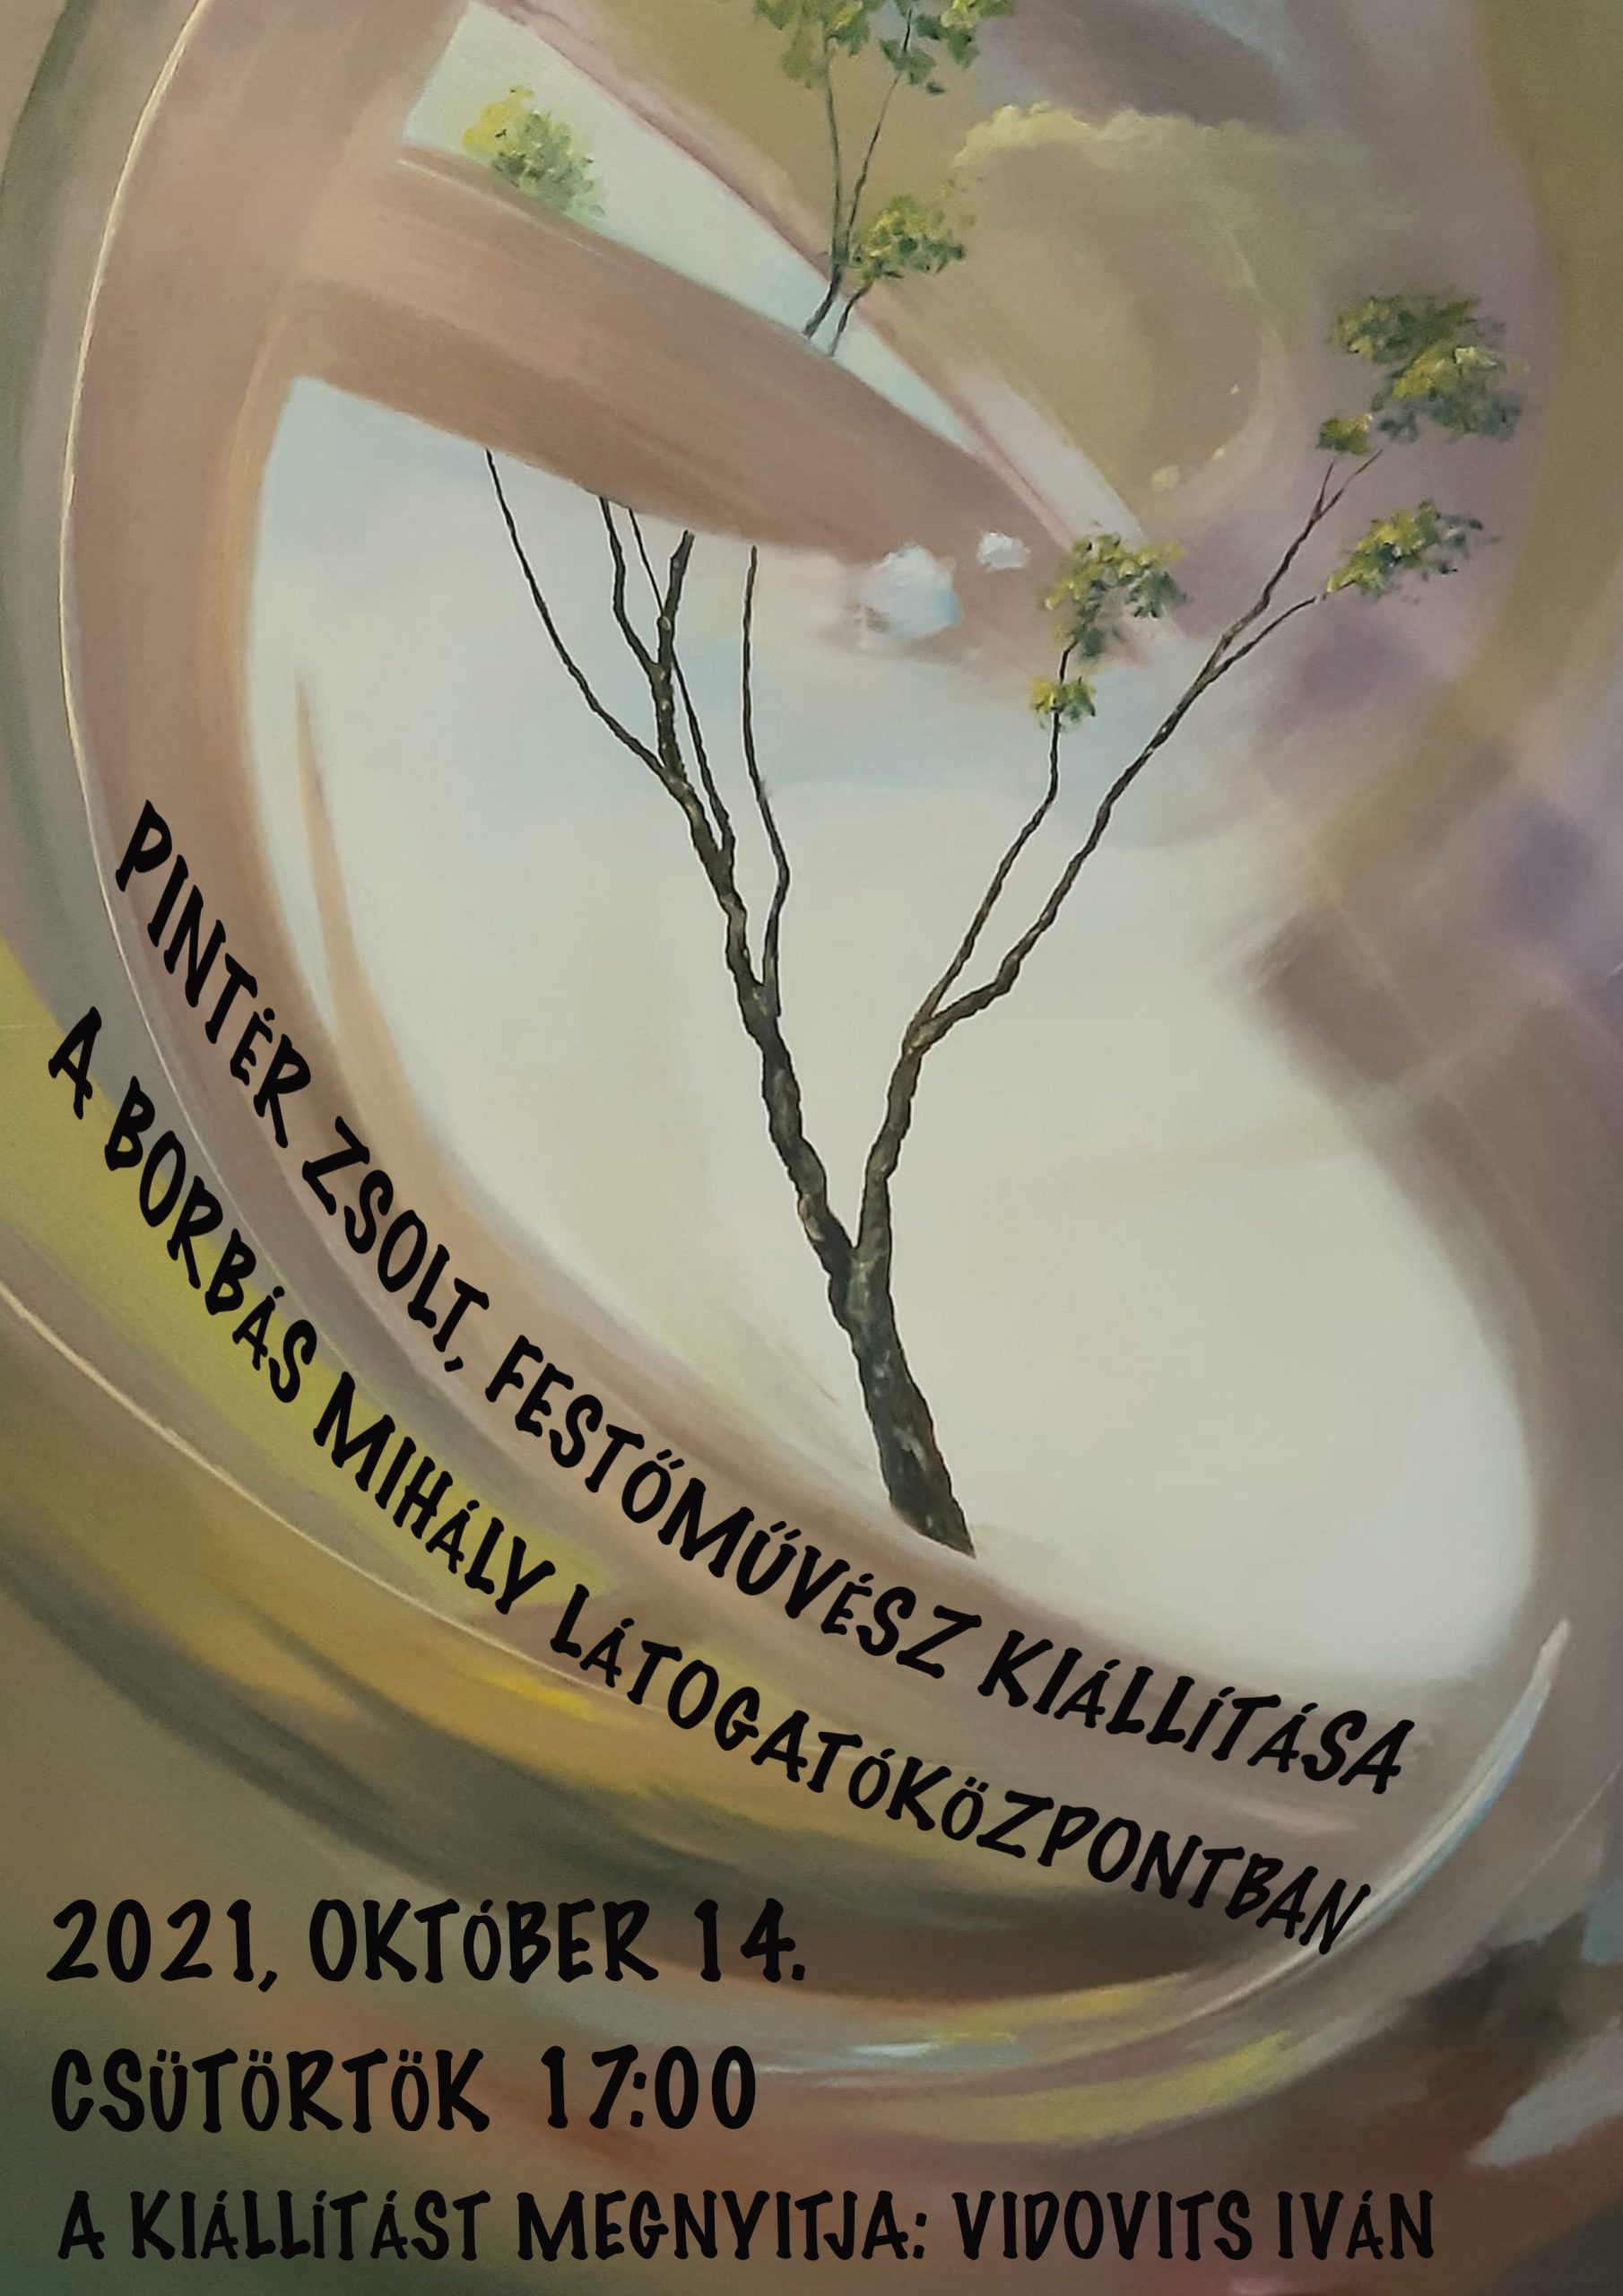 2021.10.24. Pintér Zsolt kiállításának megnyitója